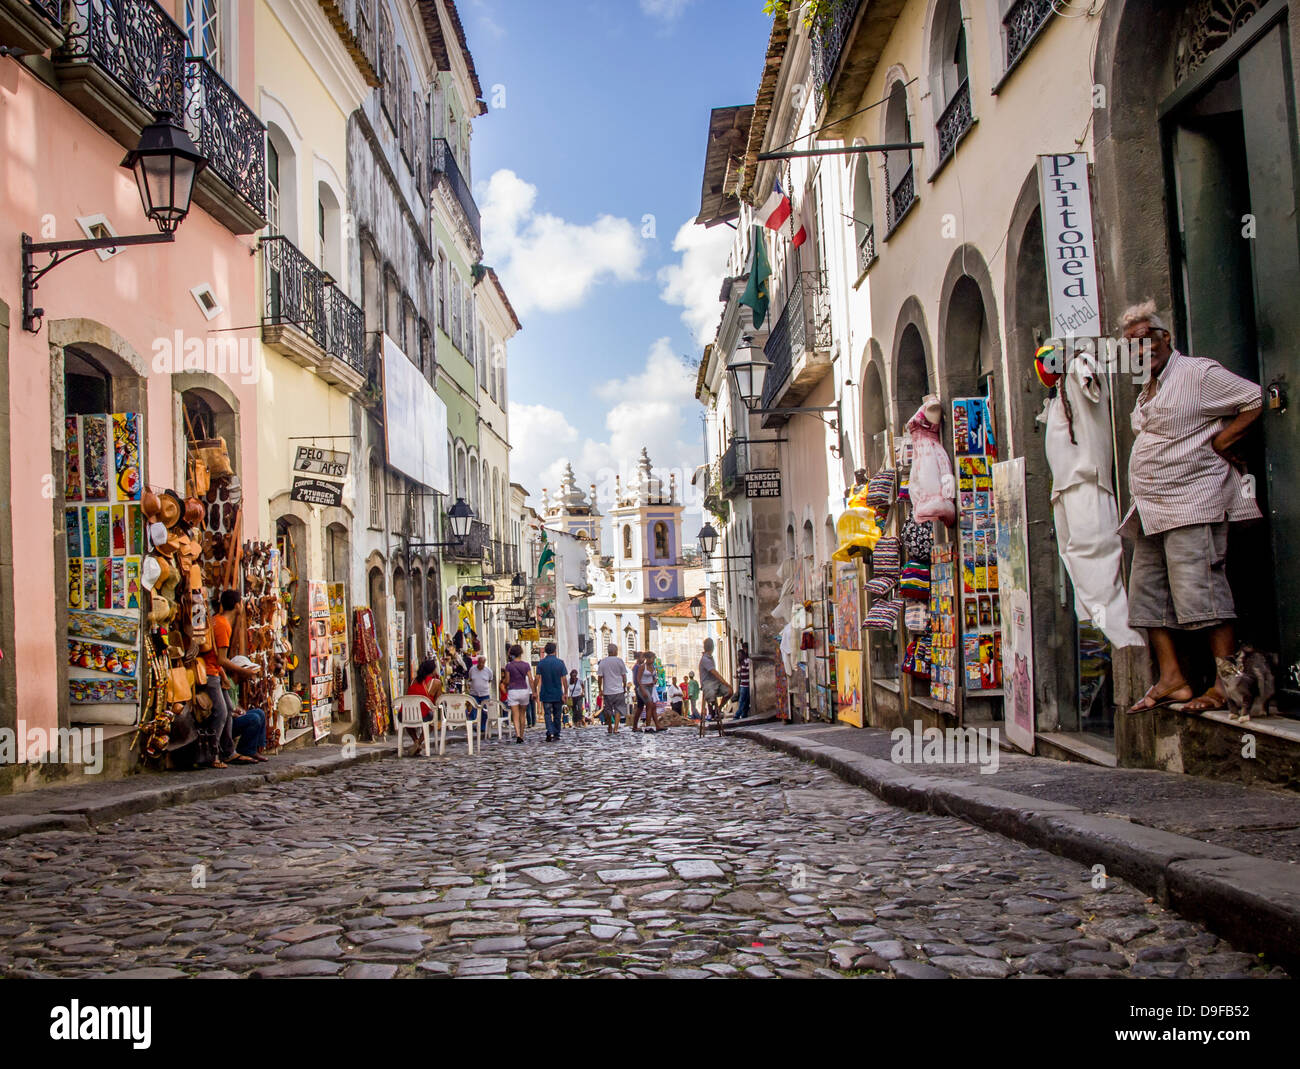 Rua das Portas do Carmo in the historical center of Salvador, the capital of Bahia region in Brazil. Stock Photo